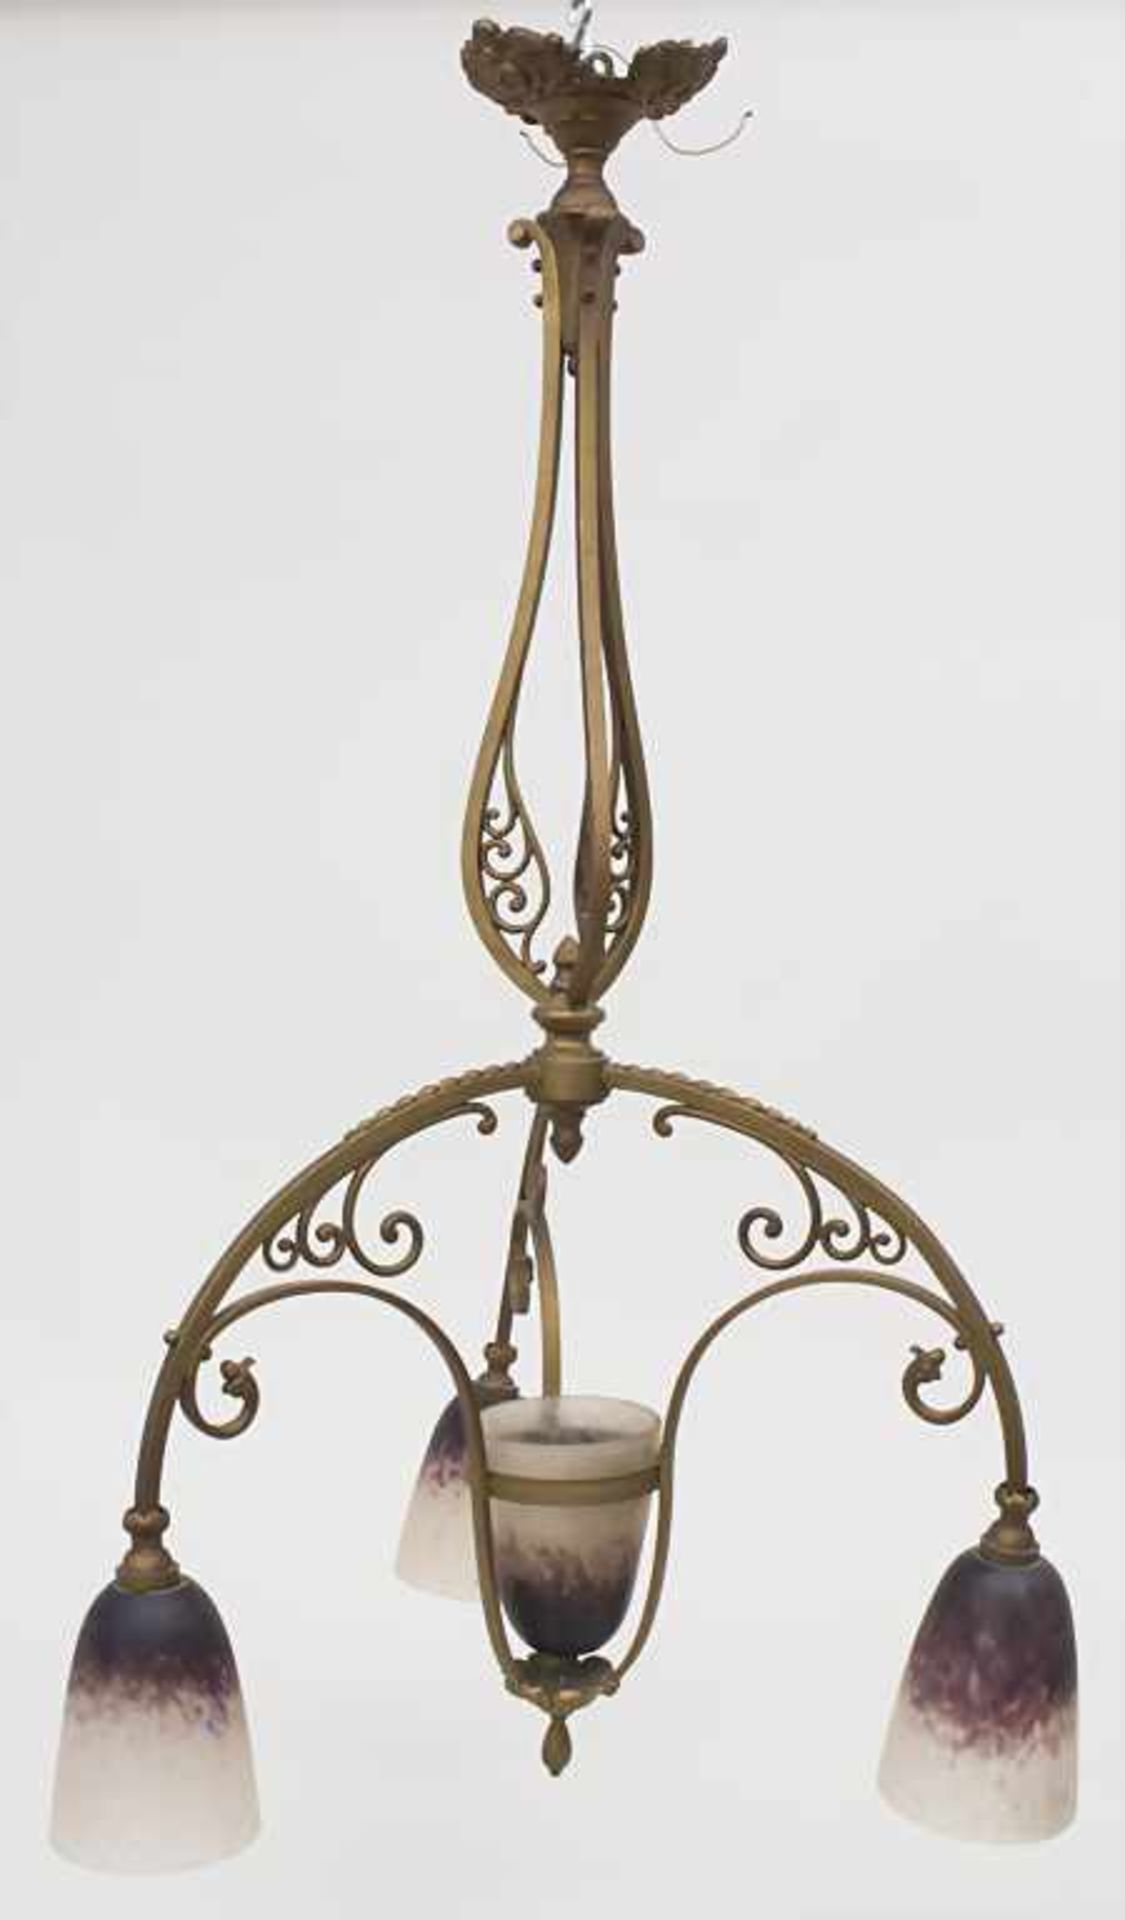 Deckenlampe / A ceiling lamp, Schneider, um 1900Material: farbloses Glas, satiniert, 3